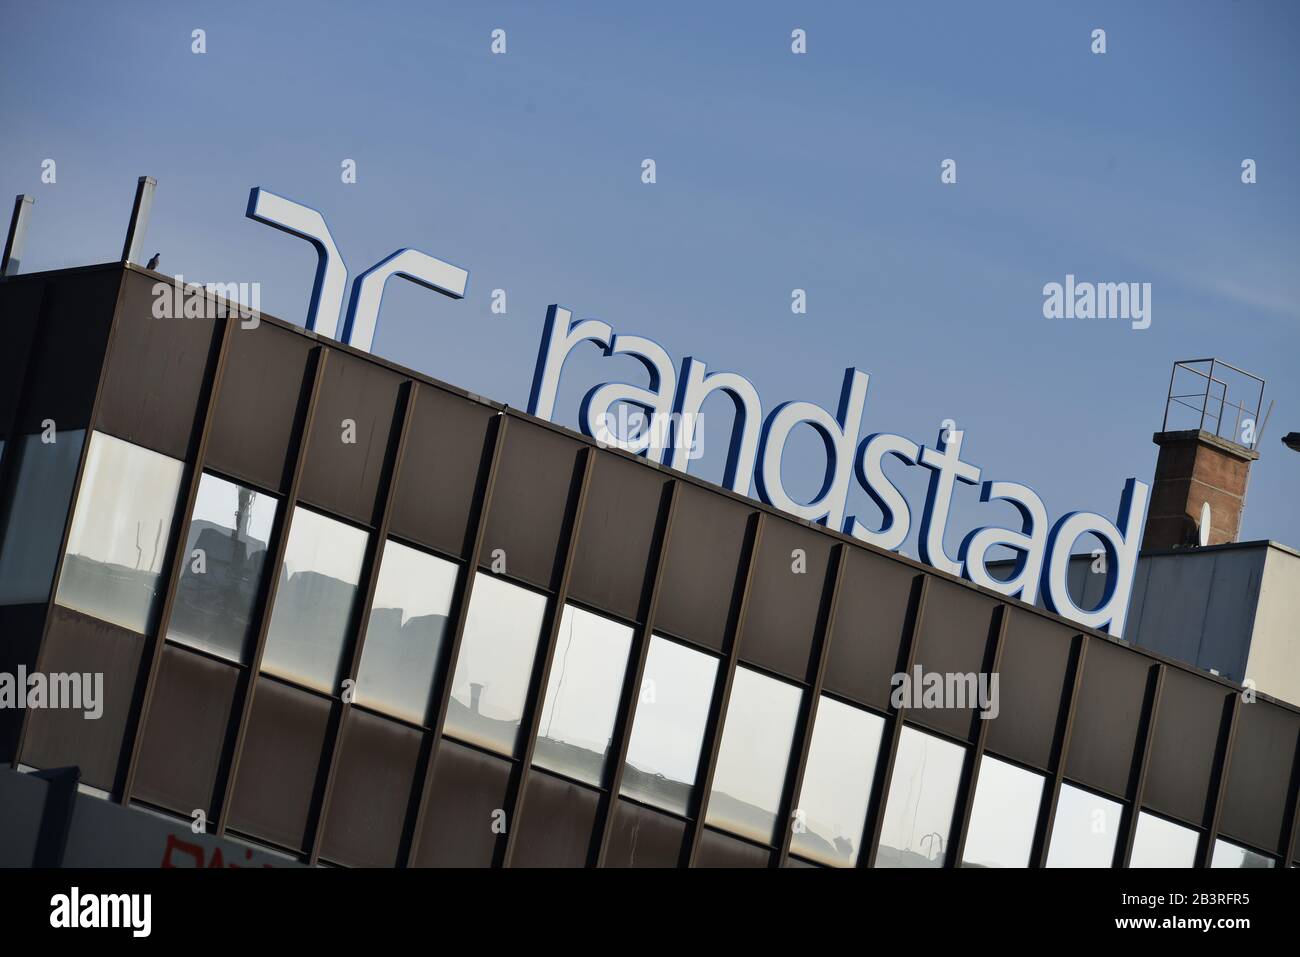 Randstad, Werbung, Schlossstrasse, Steglitz, Berlin, Deutschland Banque D'Images